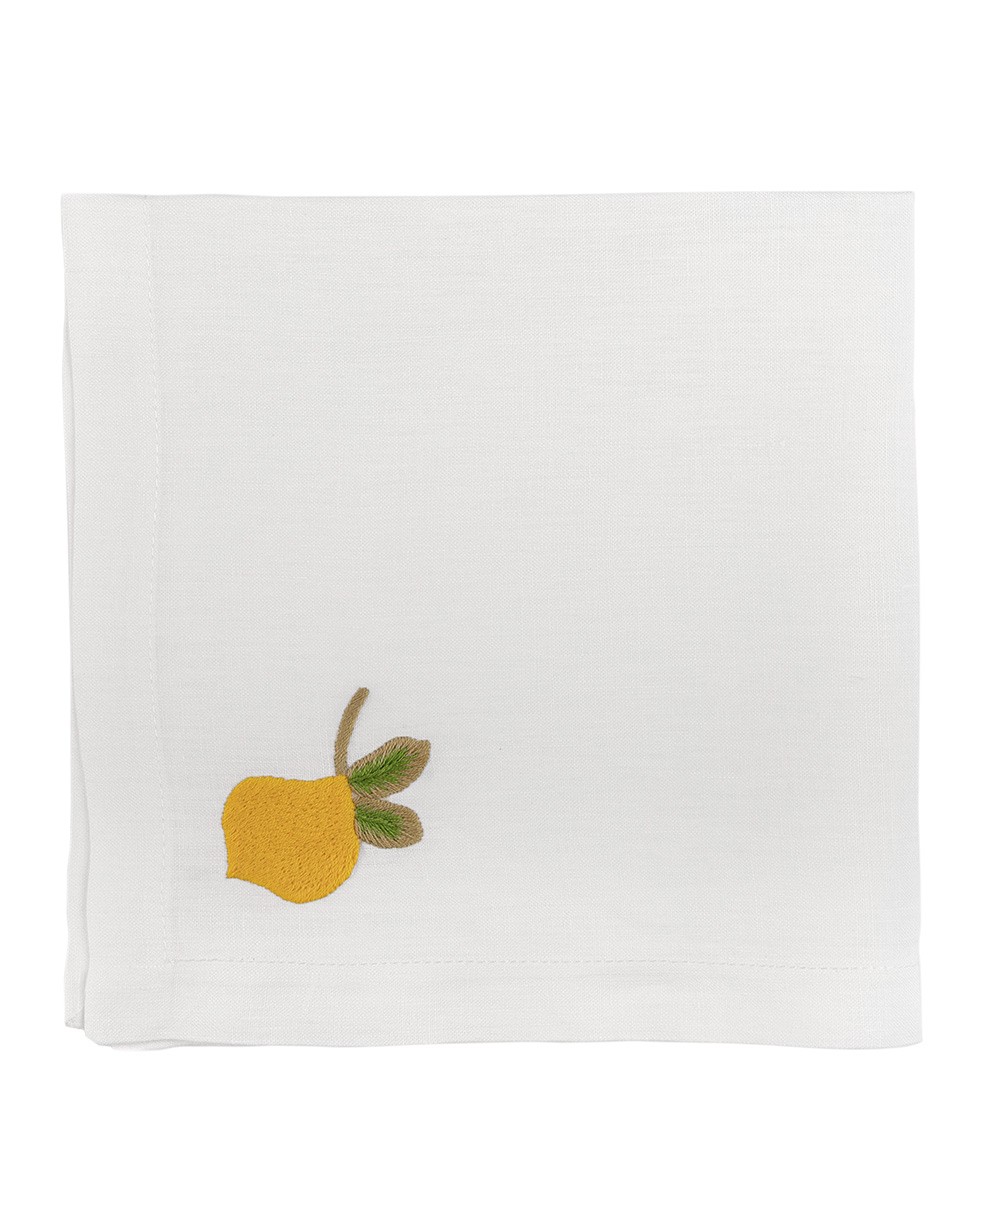 Hier abgebildet eine bestickte Zitronen Serviette von Indradanush - RAUM concept store